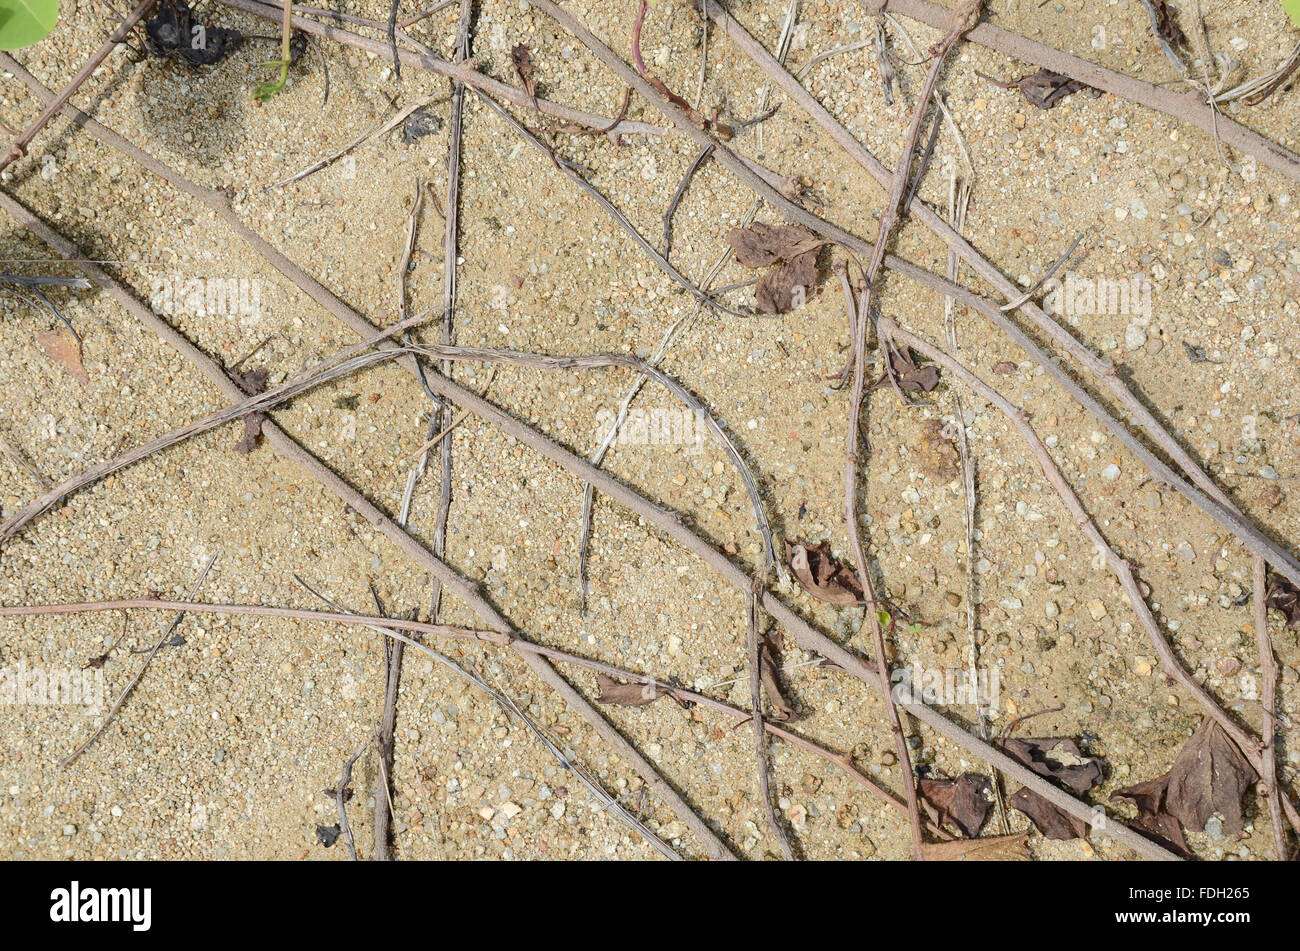 Fondo de arena, piedras, raíces y tallos de pasto Foto de stock